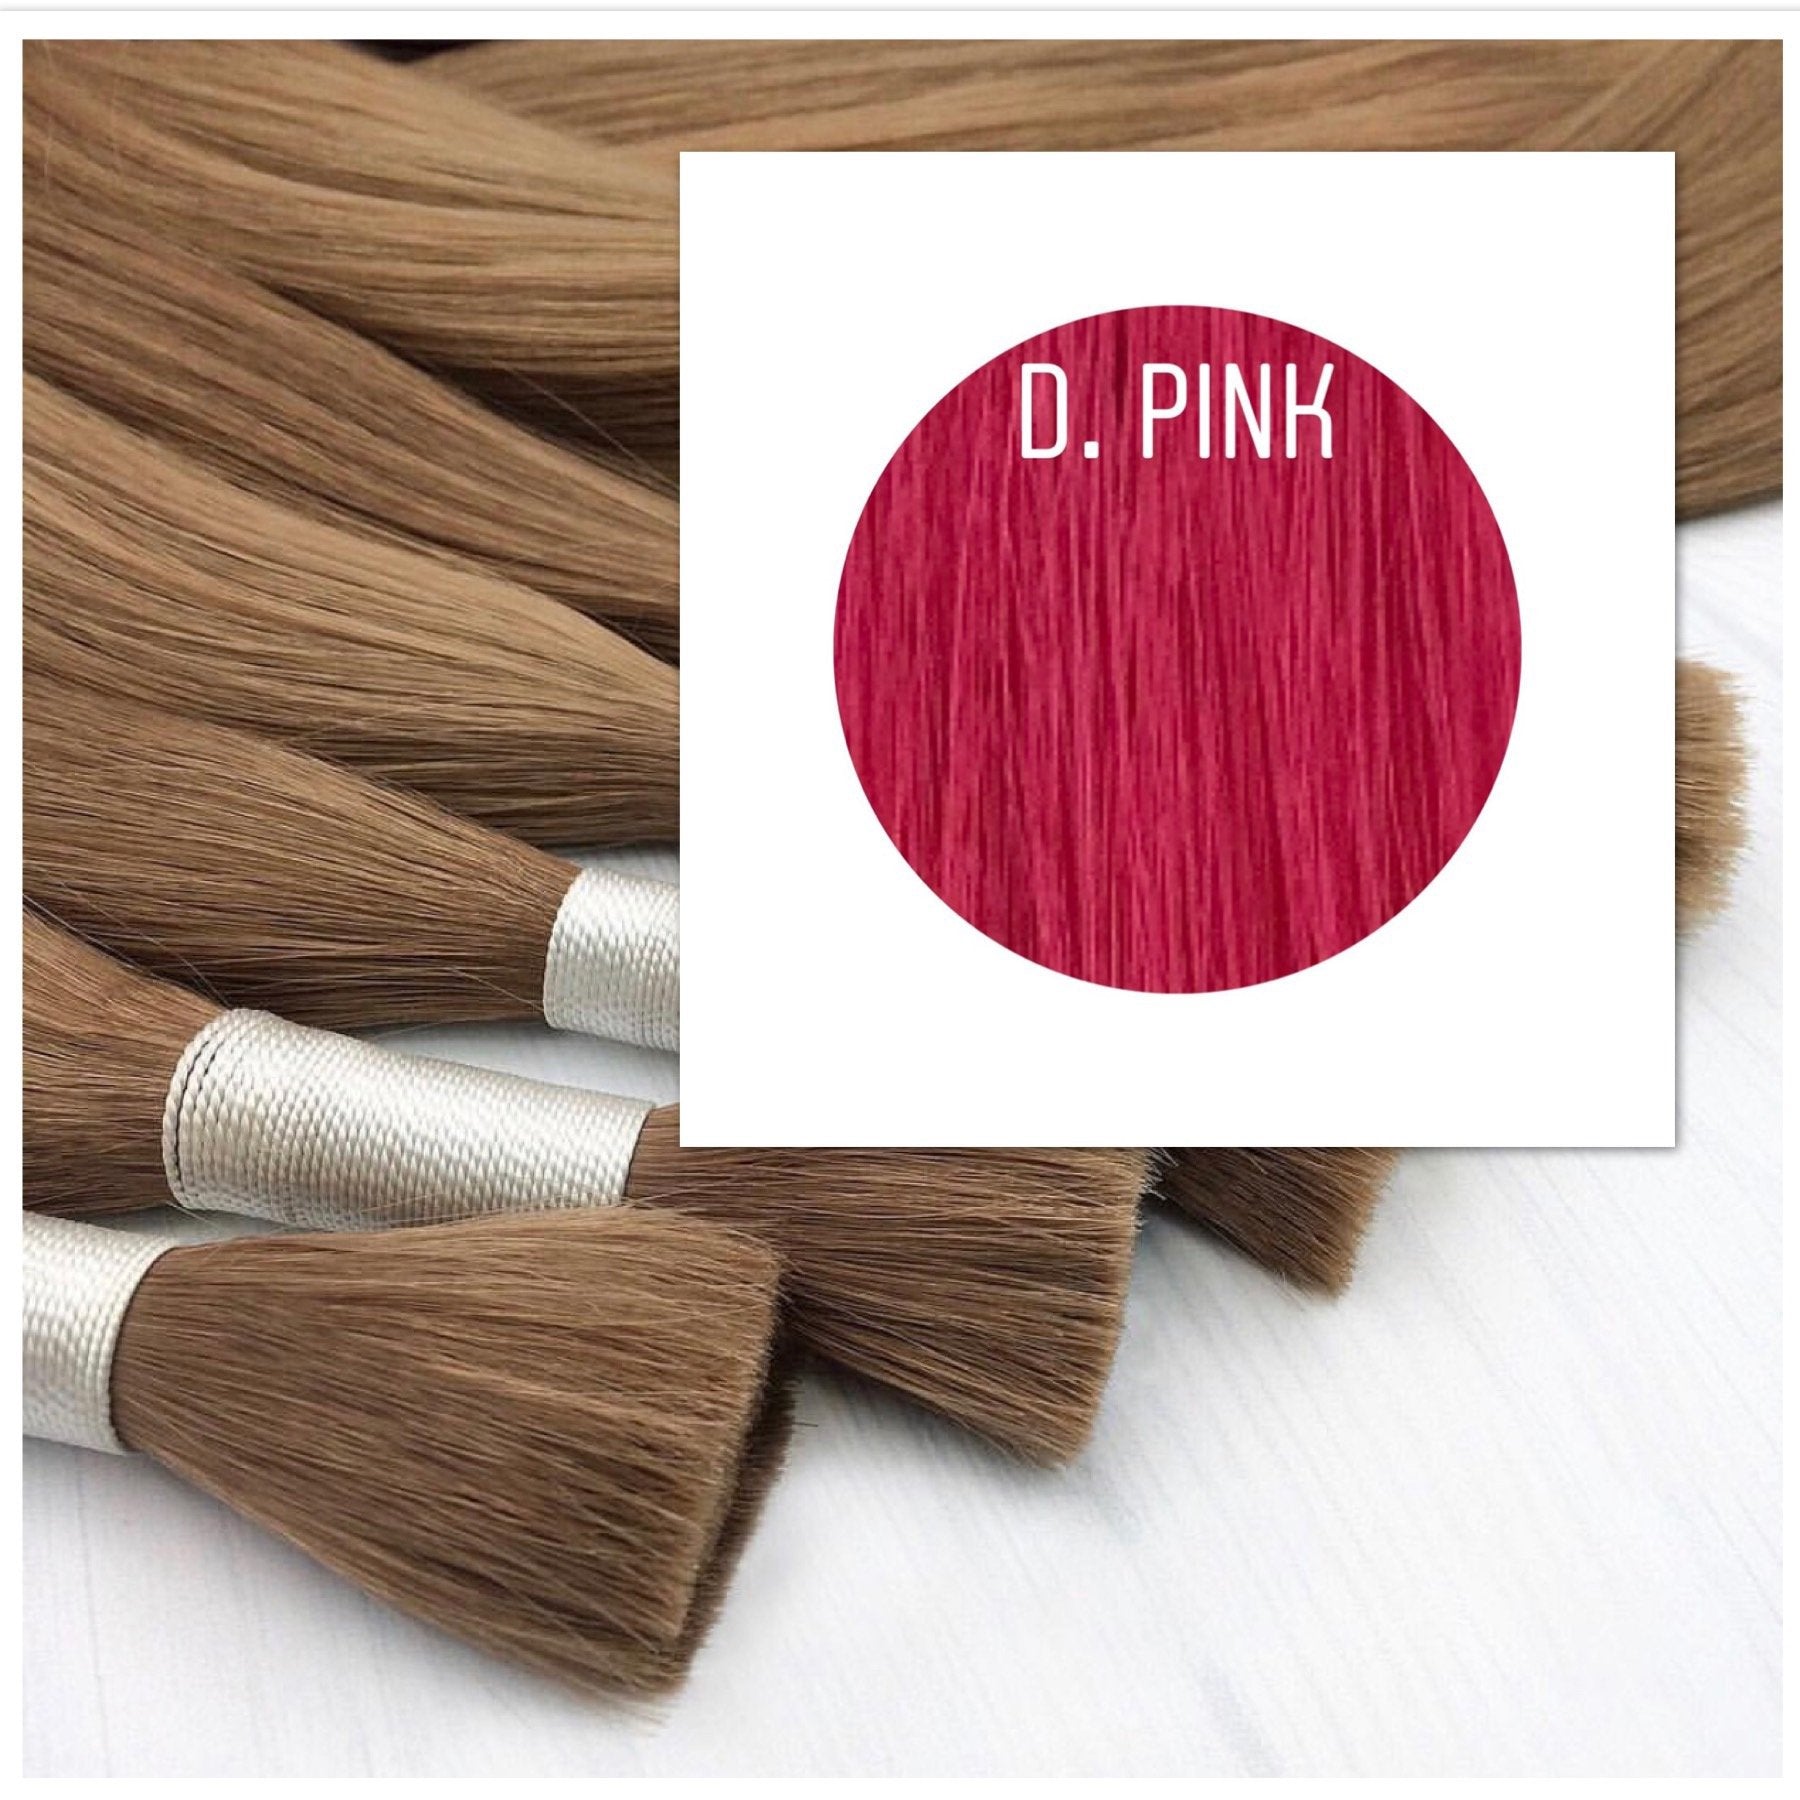 Raw cut hair Color D.Pink GVA hair_Retail price - GVA hair